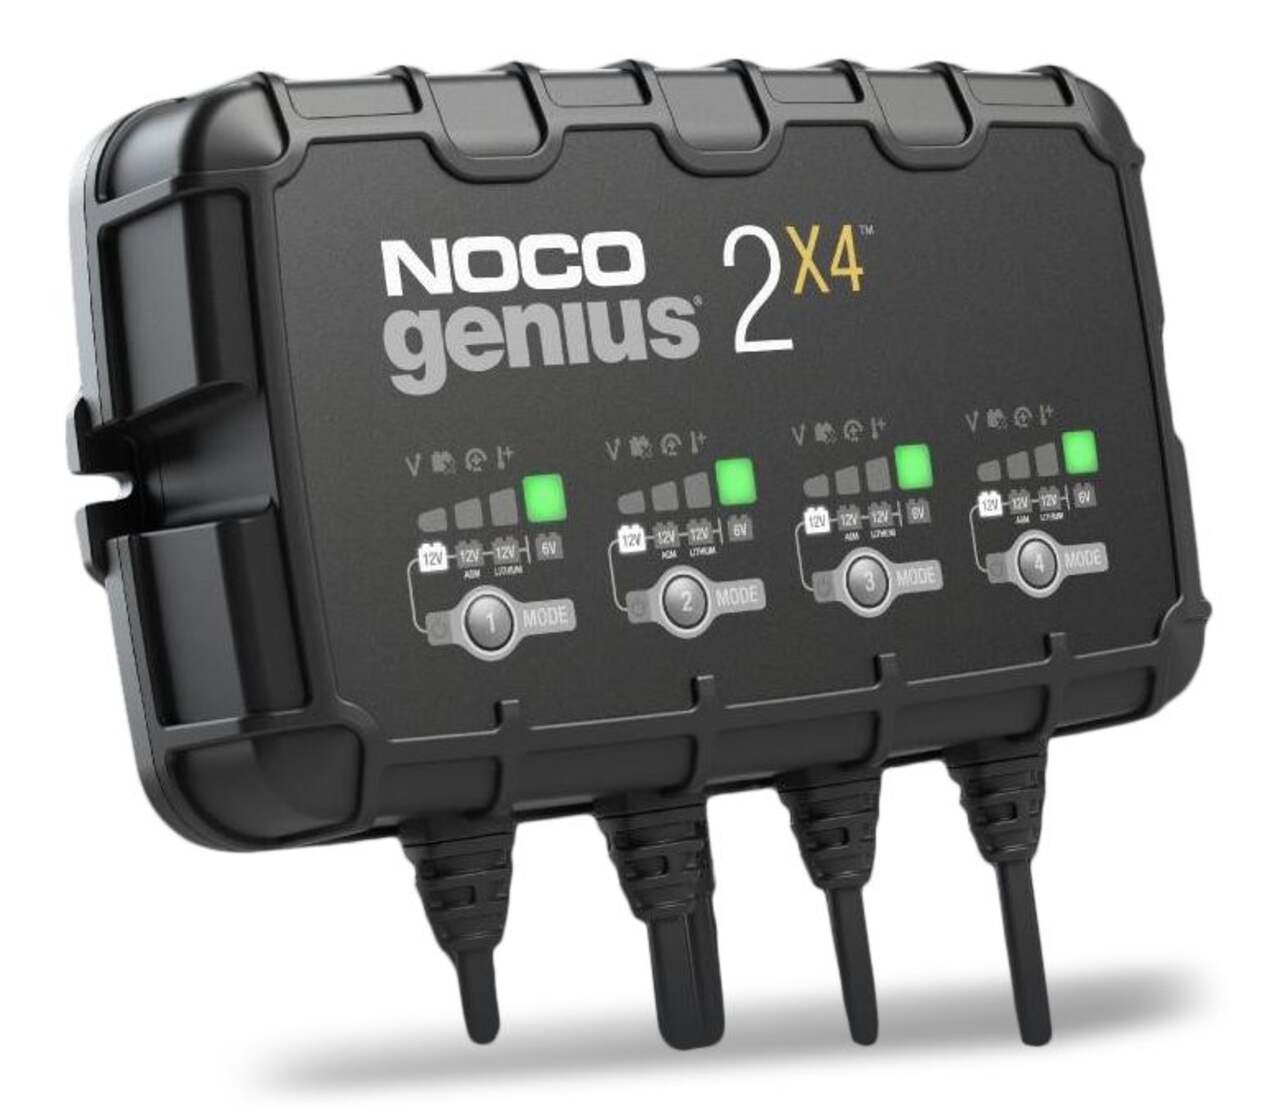 Chargeur de batterie voiture NOCO Genius 5. Automatique